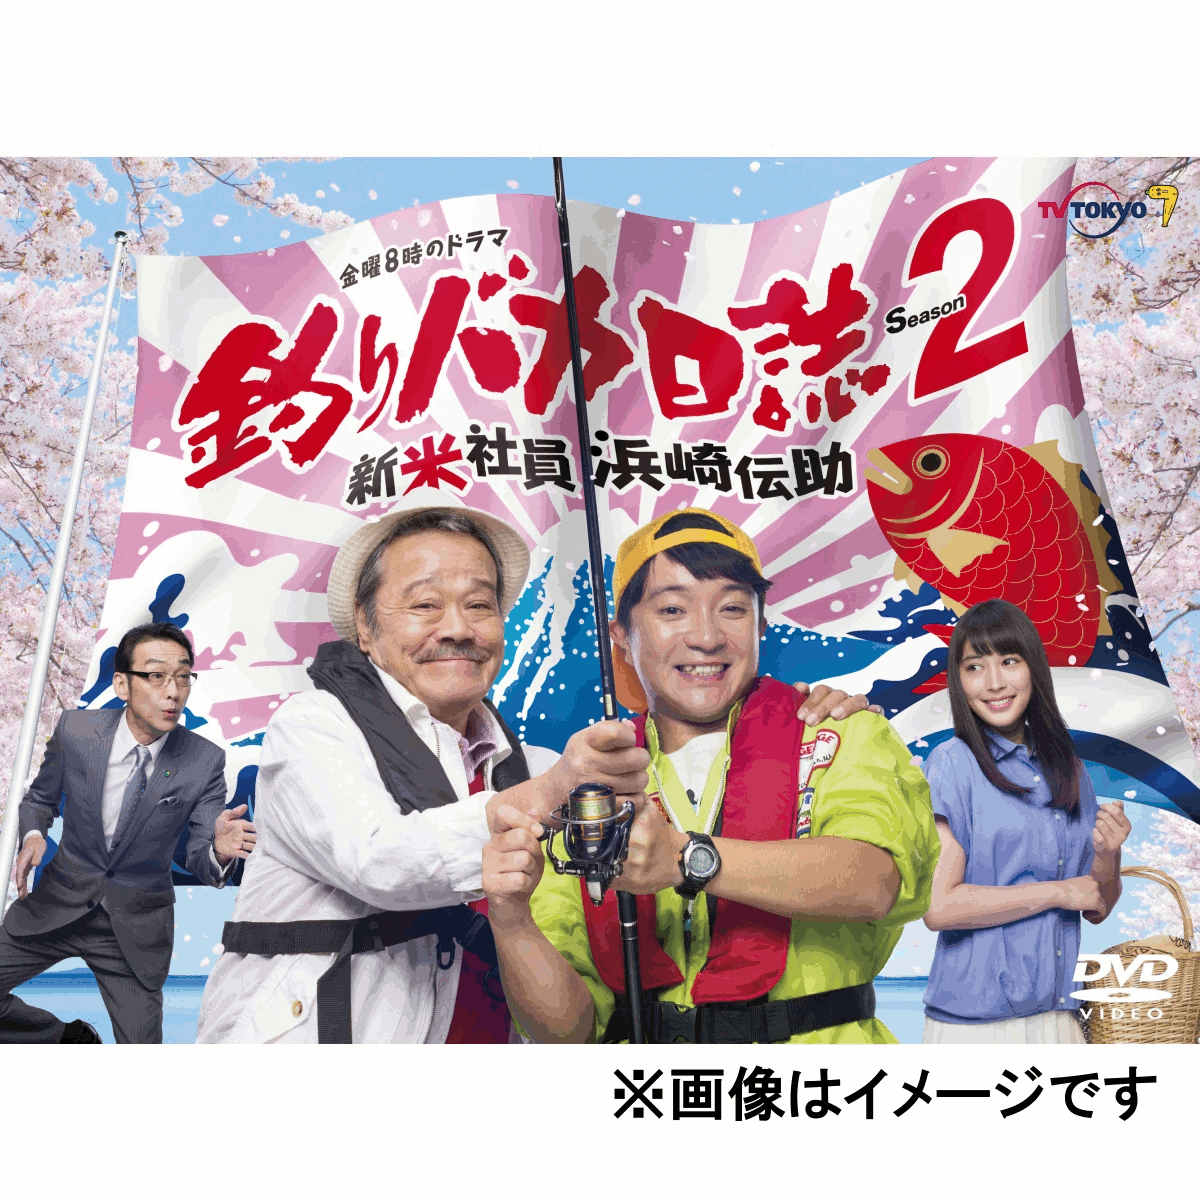 楽天ブックス: 釣りバカ日誌 Season2 新米社員 浜崎伝助 DVD BOX